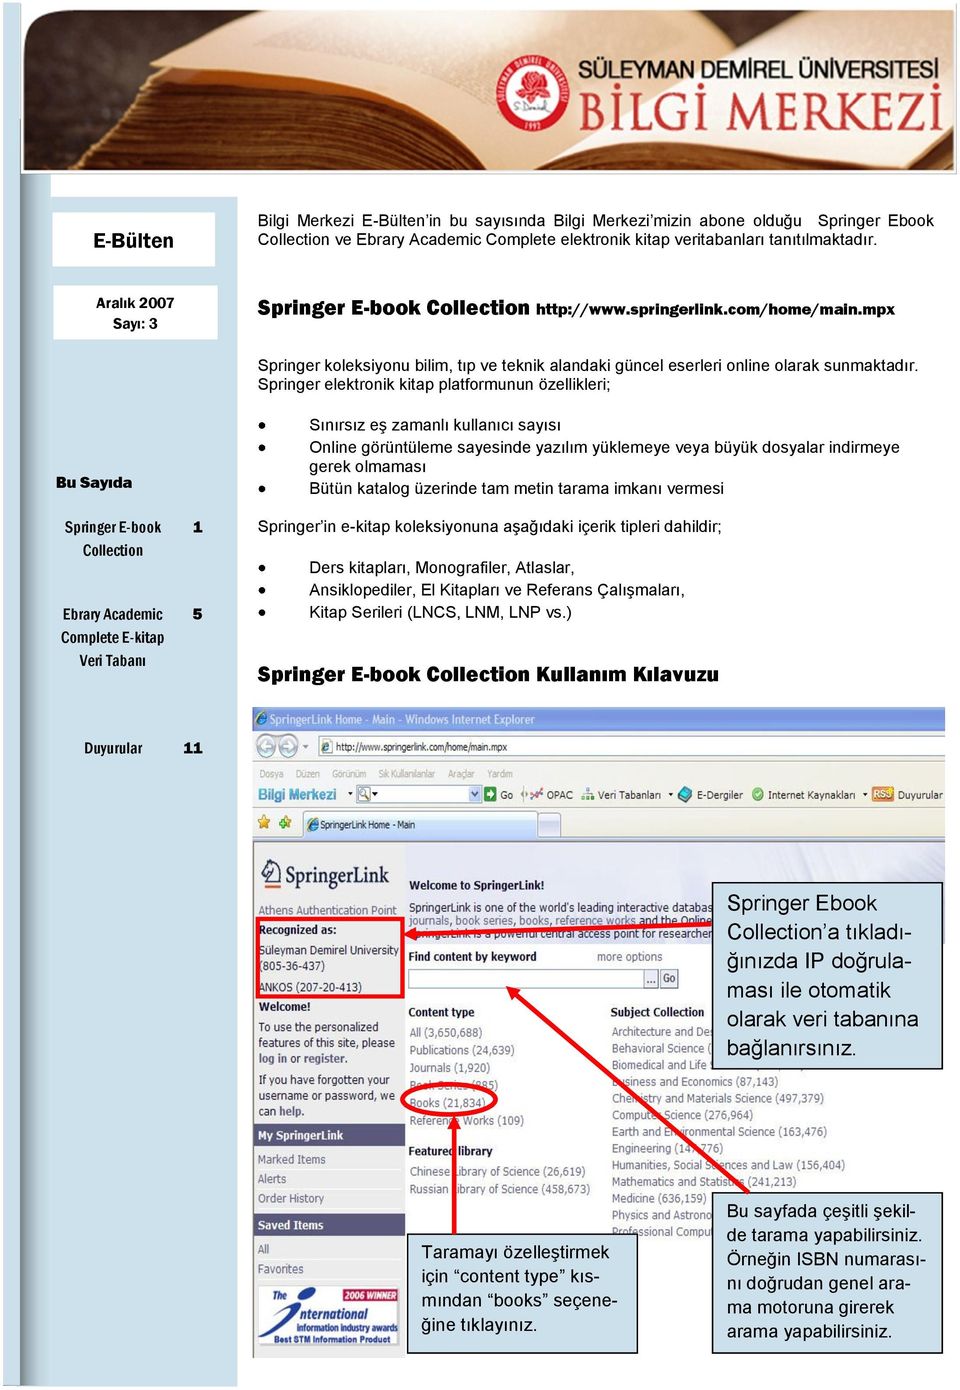 Springer elektronik kitap platformunun özellikleri; Bu Sayıda Springer E-book Collection Ebrary Academic Complete E-kitap Veri Tabanı 1 5 Sınırsız eş zamanlı kullanıcı sayısı Online görüntüleme